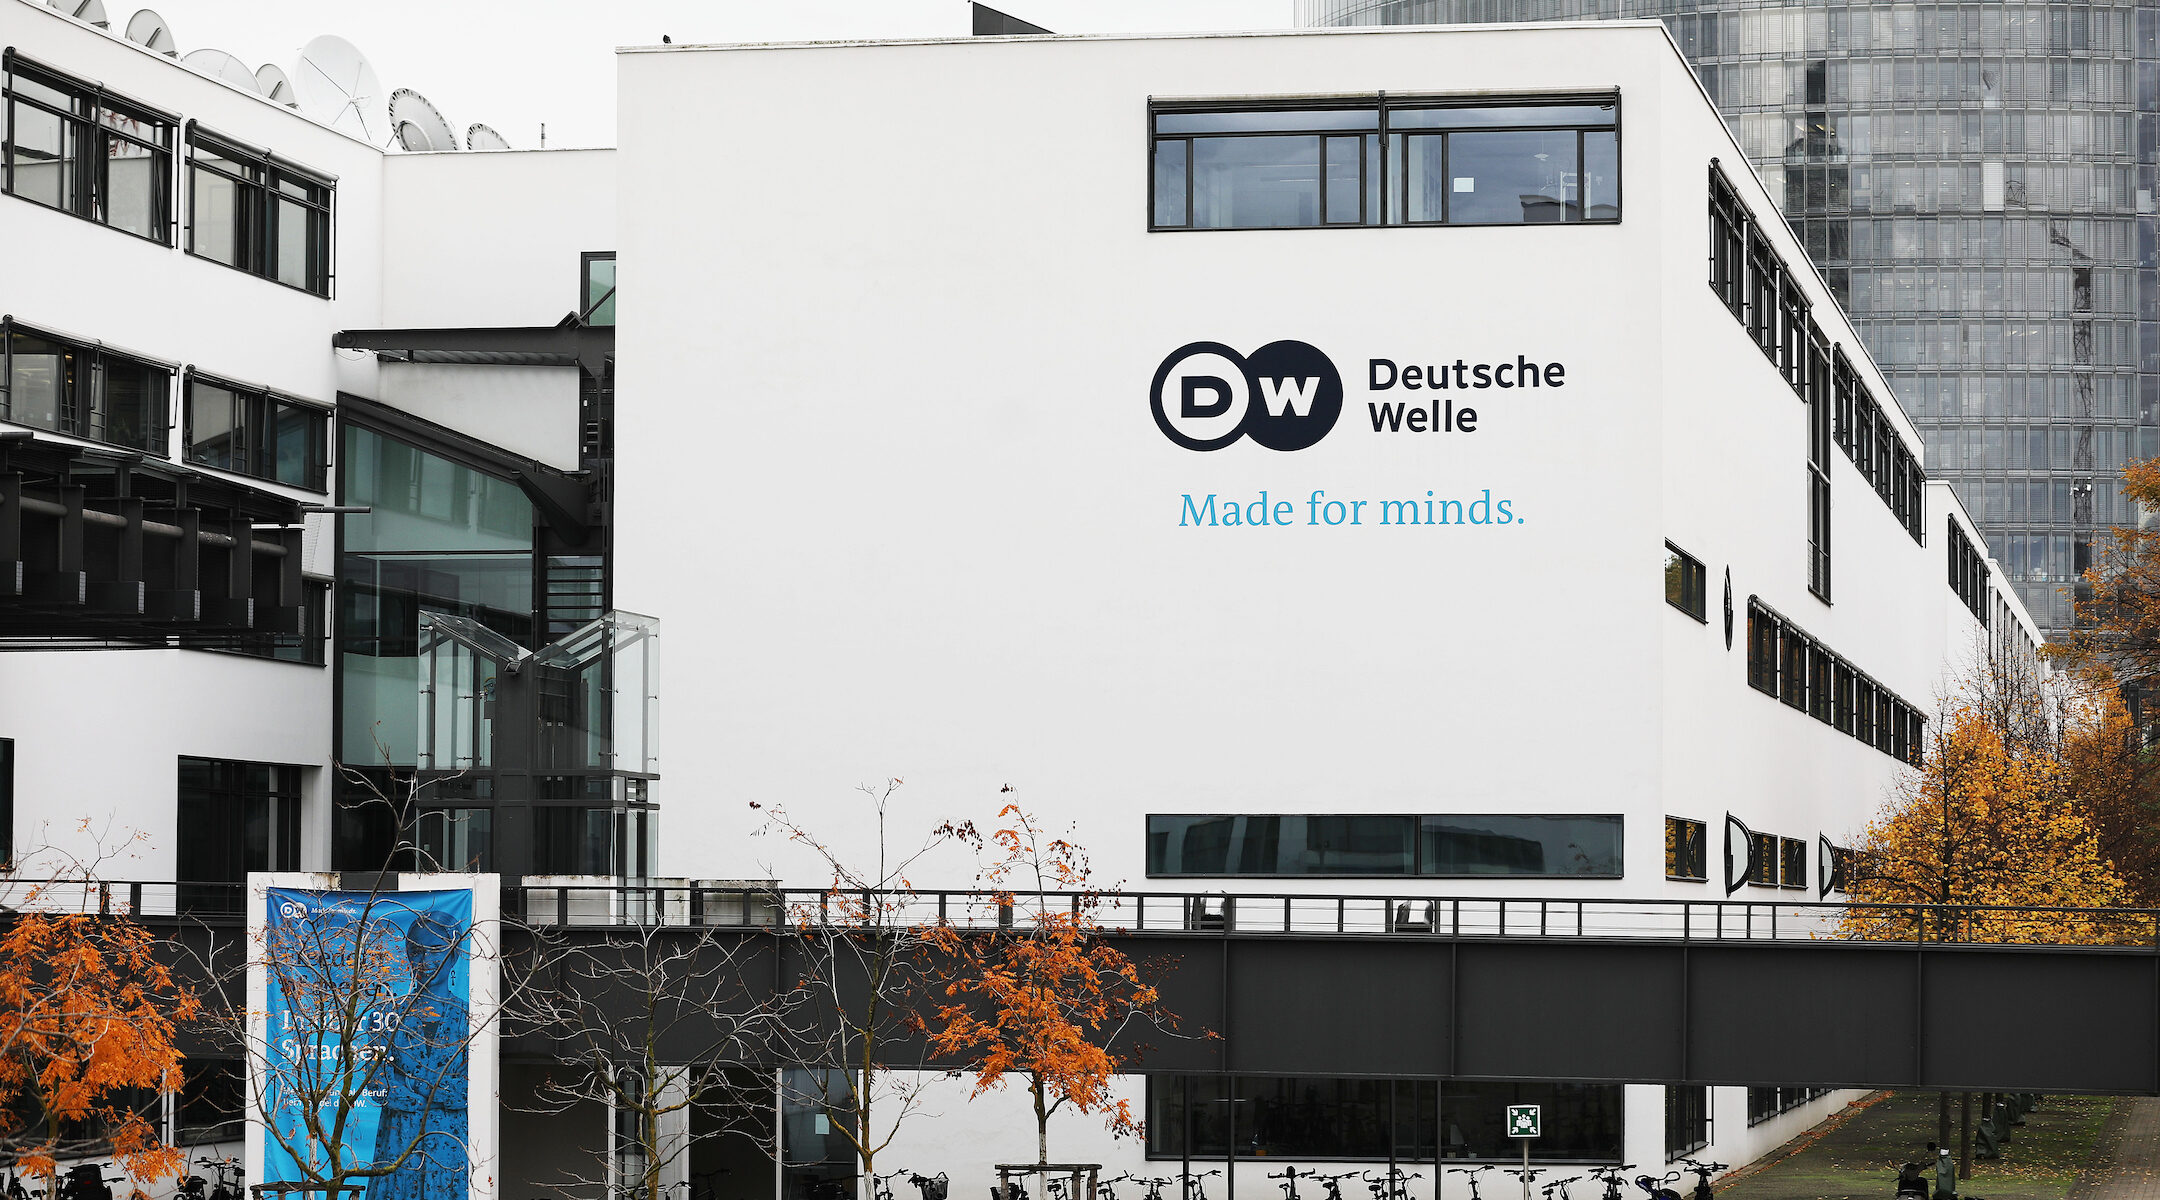 The headquarters of Deutsche Welle